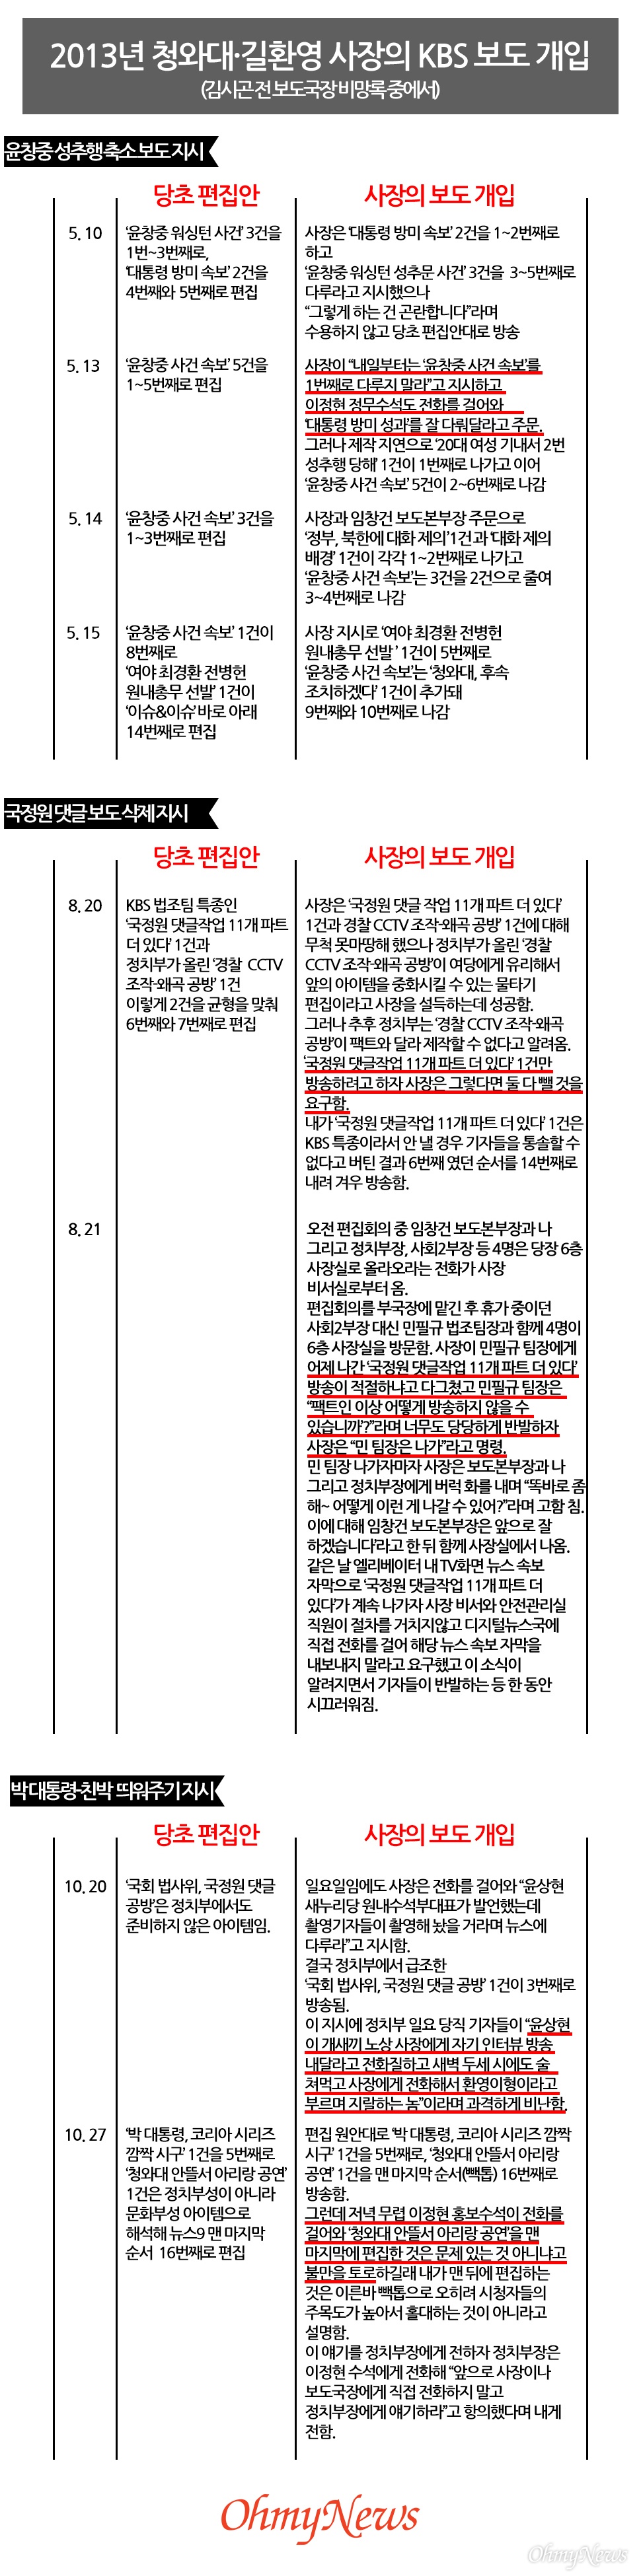 2013년 청와대·길환영 사장의 KBS 보도 개입 내용(김시곤 전 보도국장 비망록 중에서).